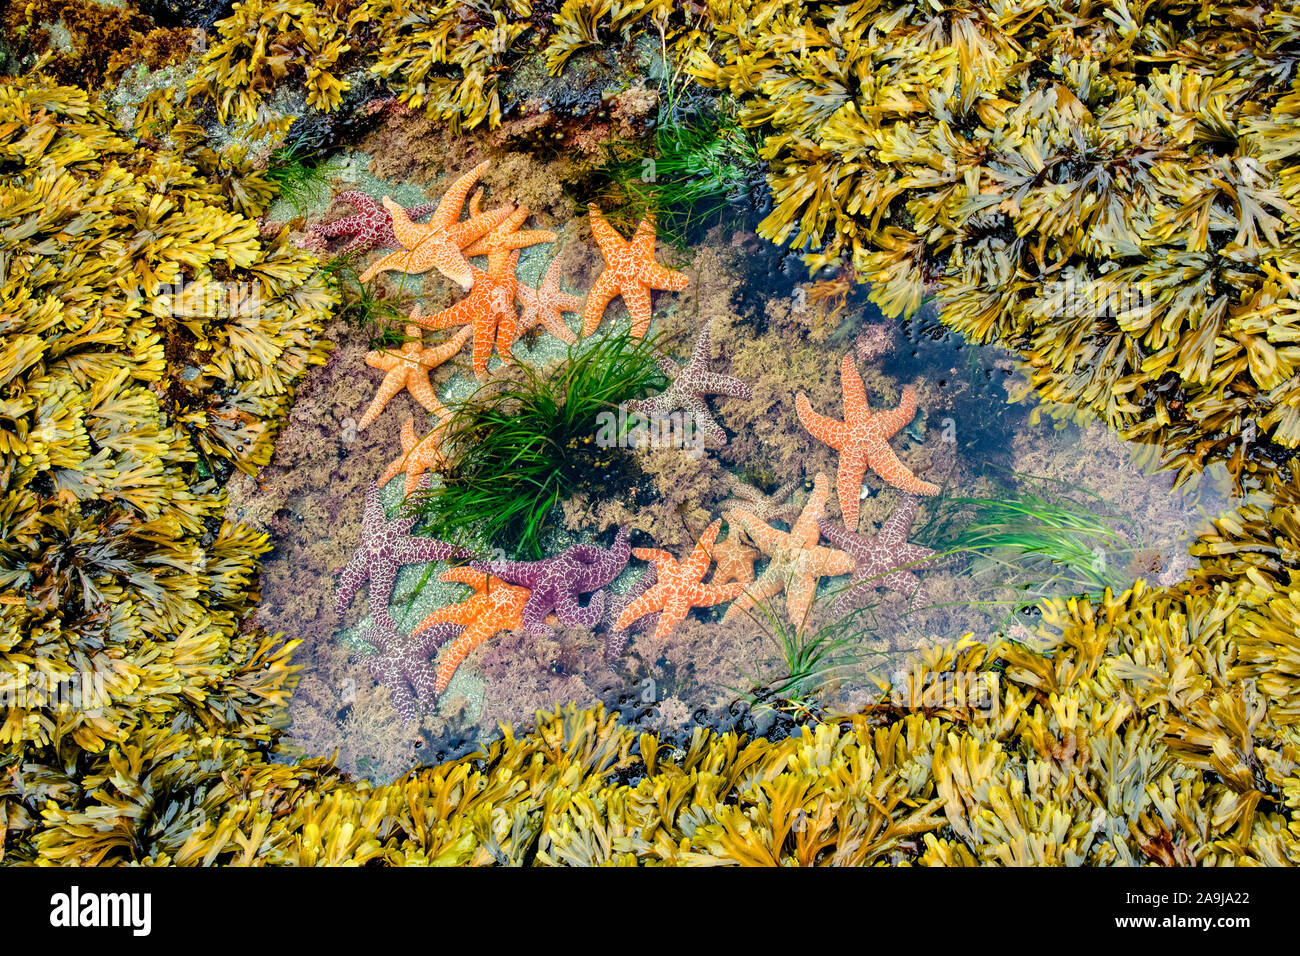 Ocra stella di mare, Pisaster ochraceus, nel pool di marea in montagna con alghe coralline, Corallina specie, vescica wrack, Fucus vesiculosus e Scouler surfgrass del Ph Foto Stock